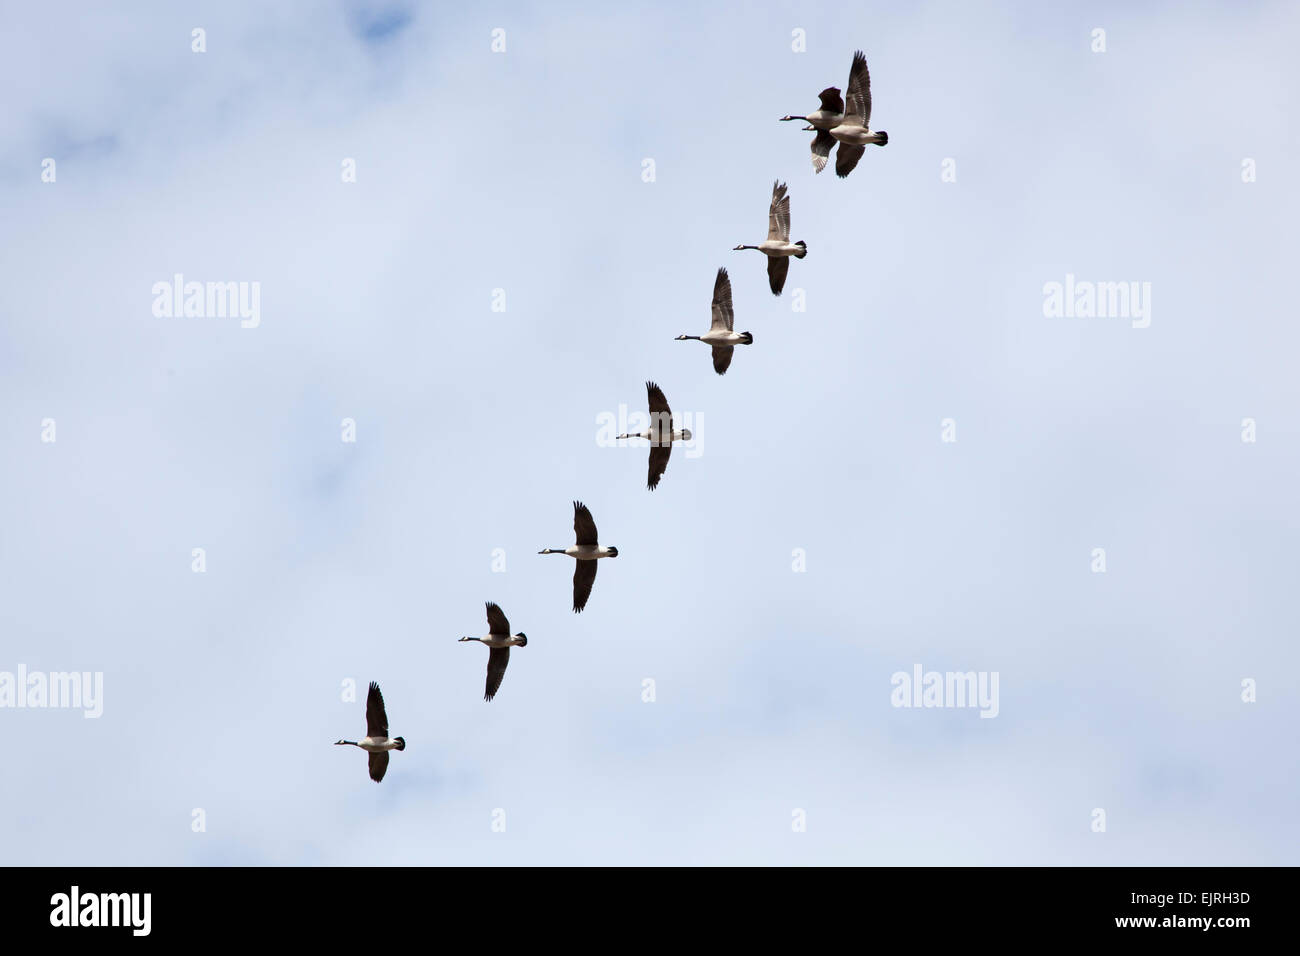 Un branco di oche del Canada volare insieme attraverso un cielo nuvoloso Foto Stock